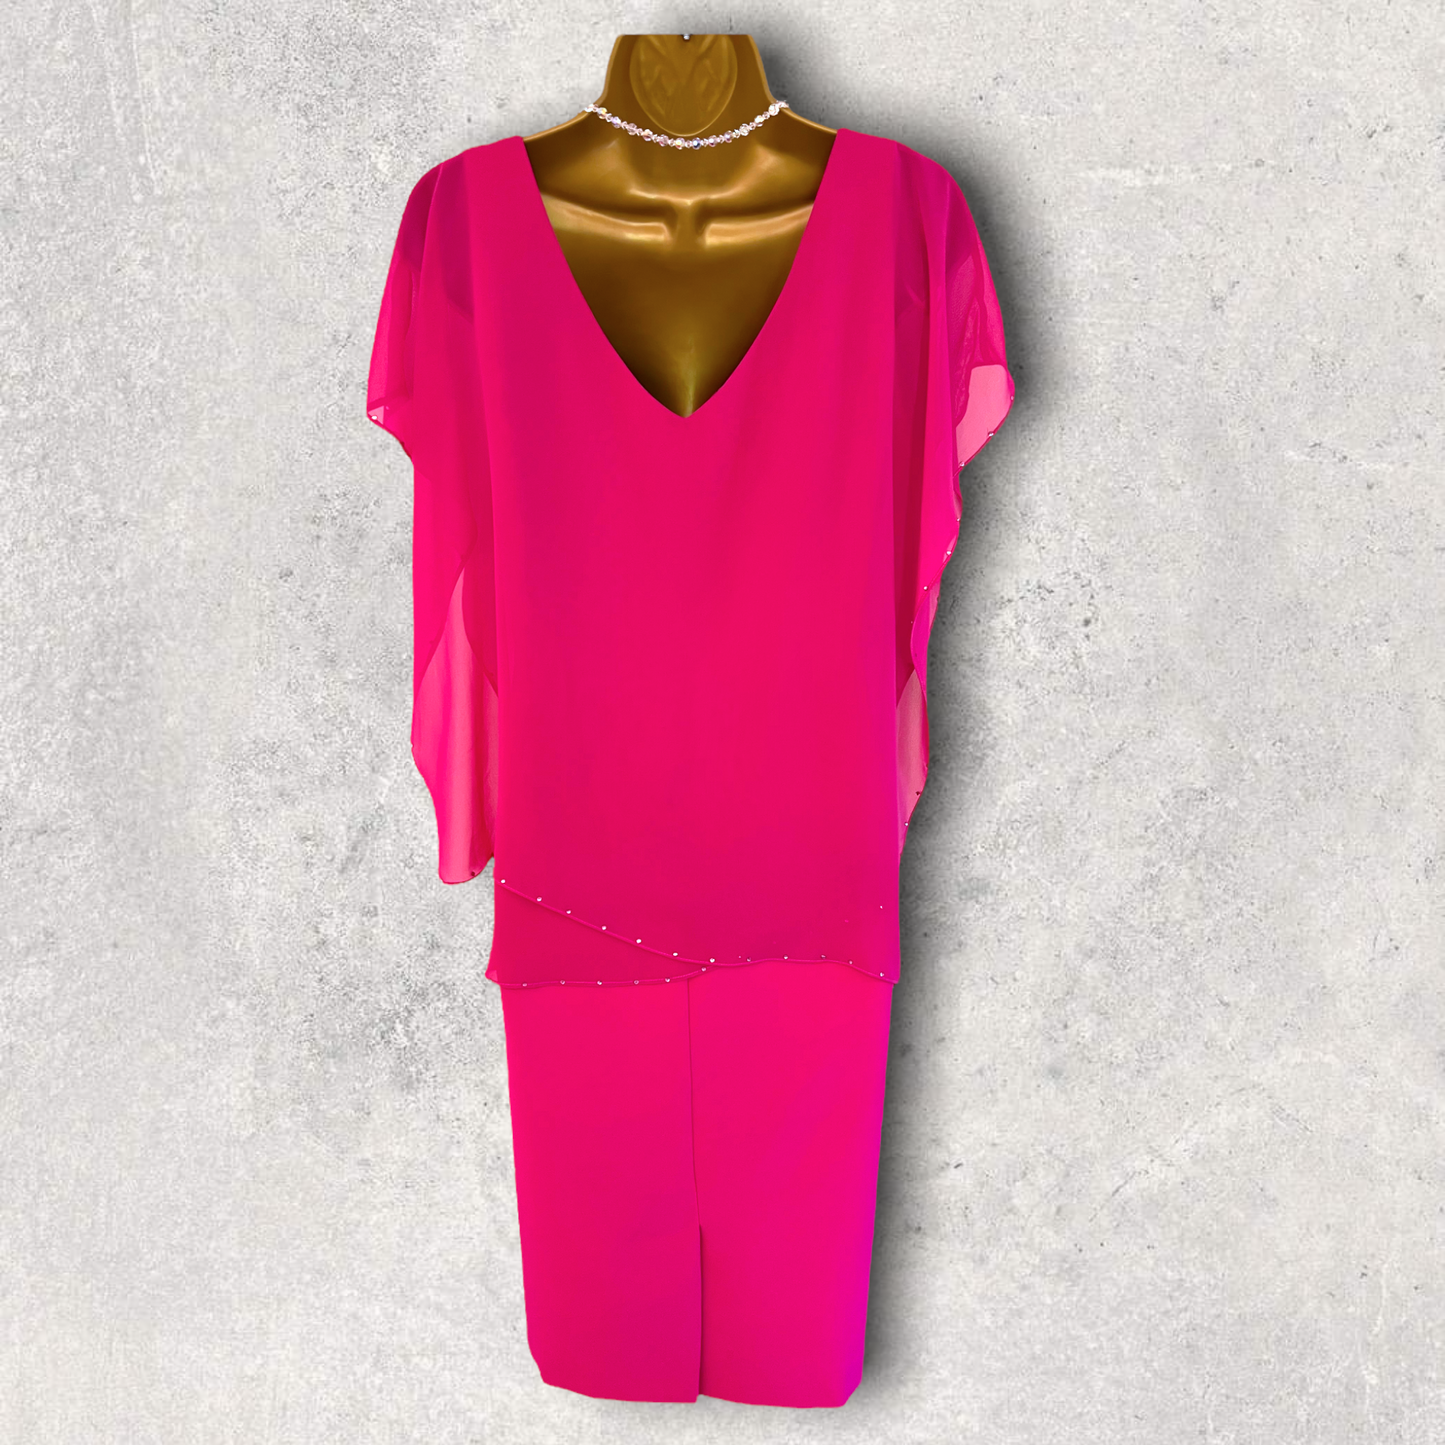 Michaela Louisa Hot Pink Chiffon Layered Dress UK 10 US 6 EU 38 BNWT RRP £195 Timeless Fashions